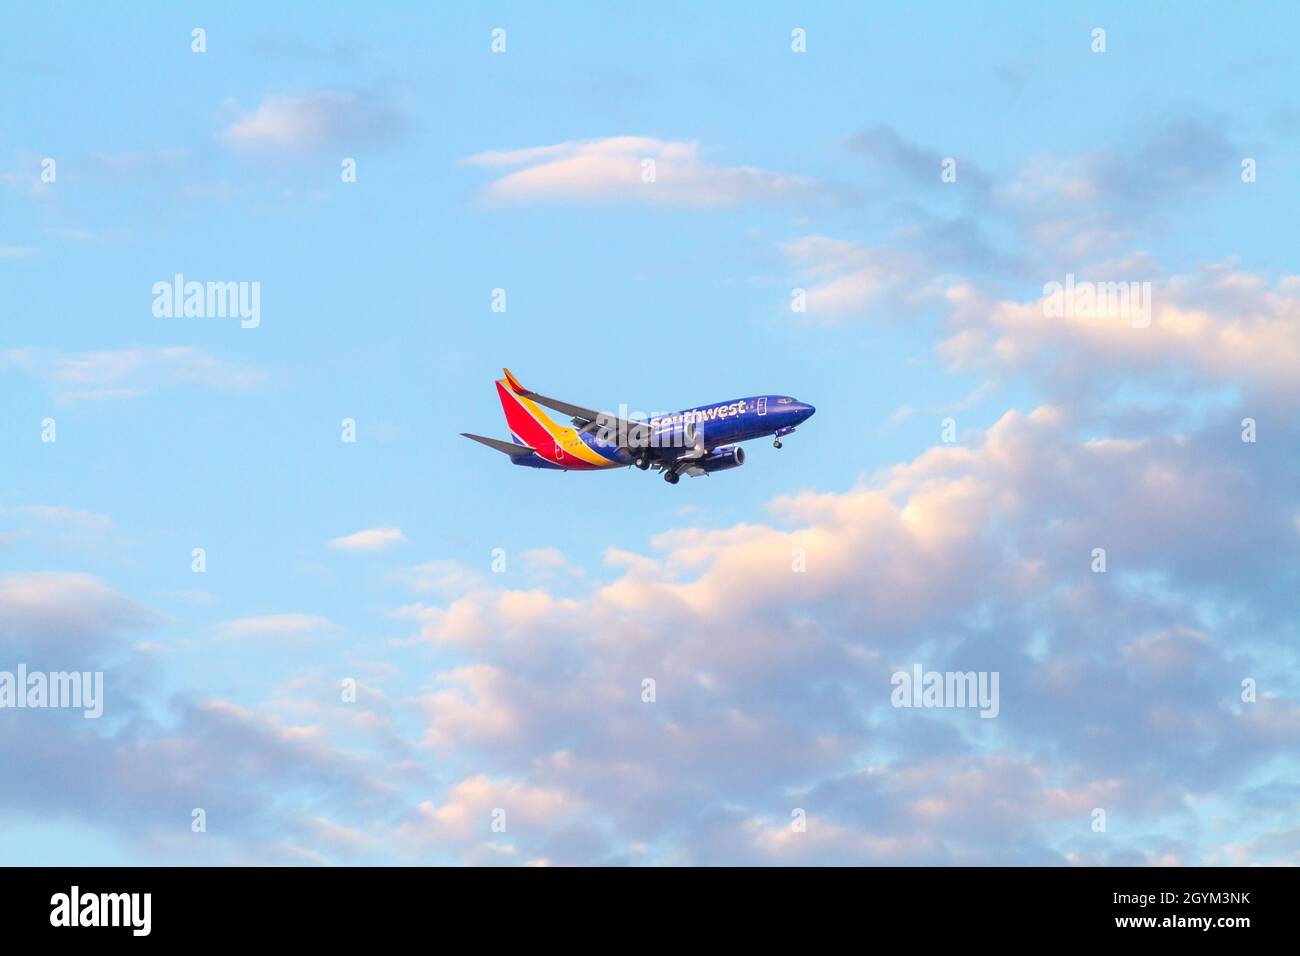 Santa Ana, CA, USA – 11 agosto 2021: Aereo Southwest Airlines che vola sul cielo di Santa Ana, California, per atterrare all'aeroporto John Wayne in Foto Stock